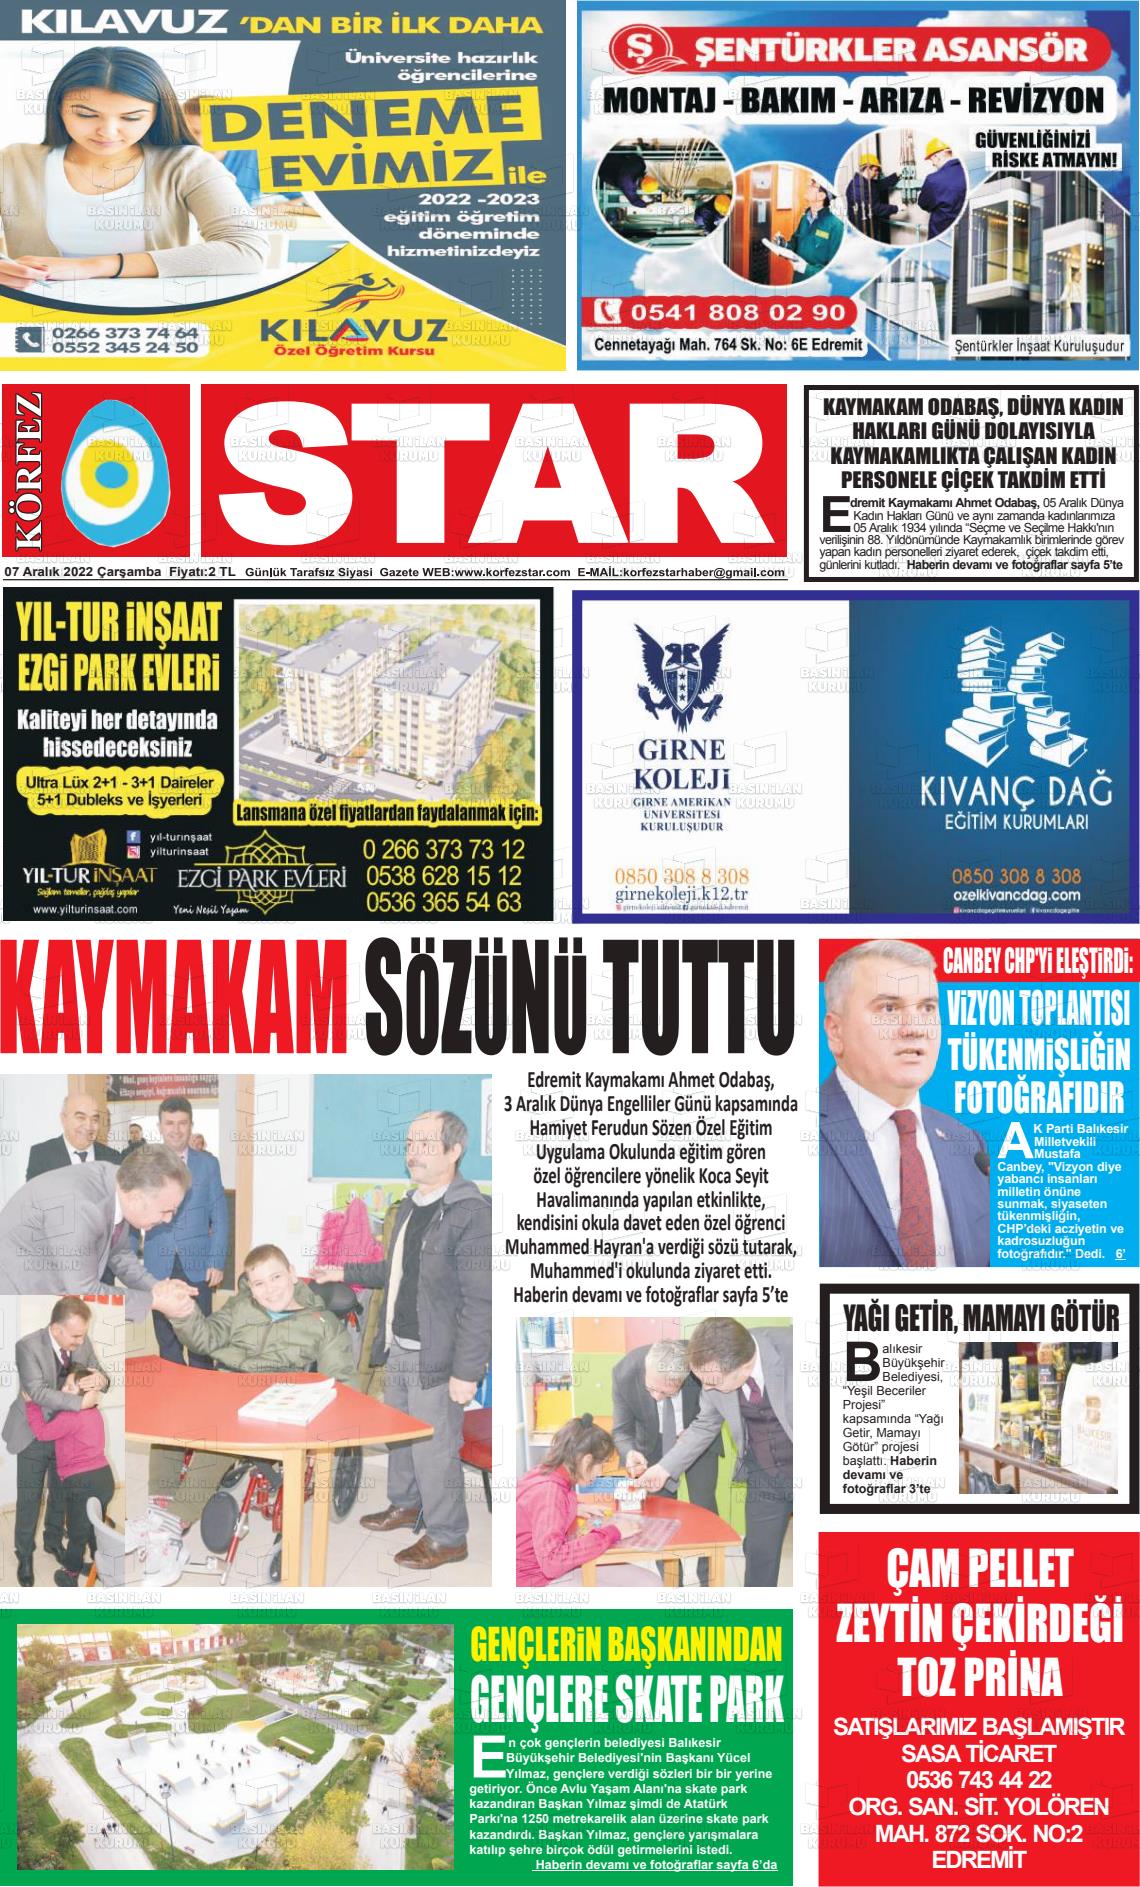 07 Aralık 2022 Körfez Star Gazete Manşeti